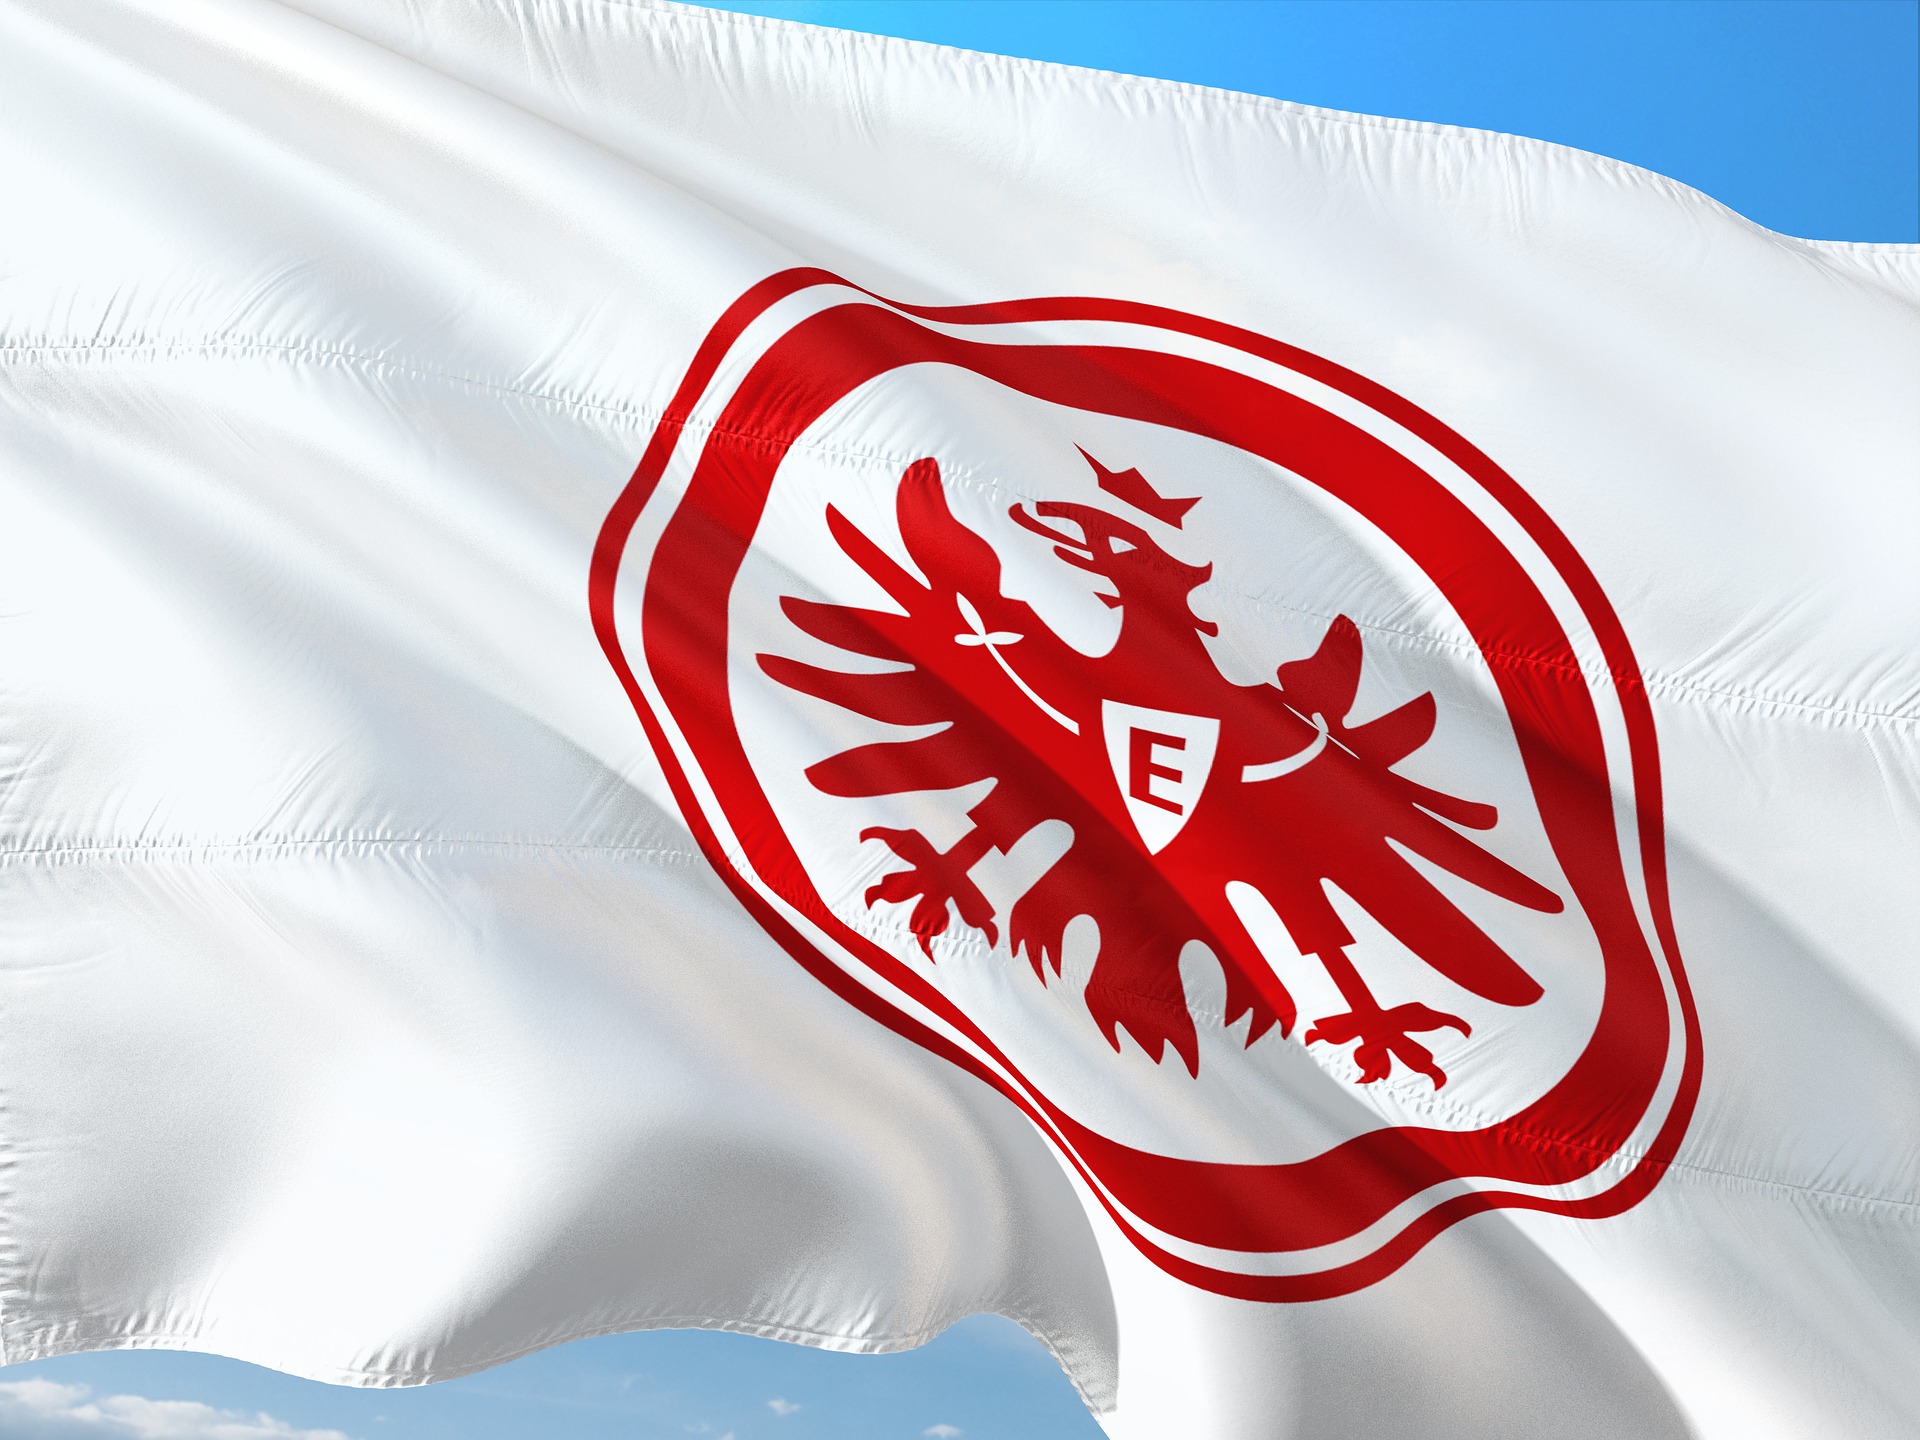 Eintracht Frankfurt Image by jorono from Pixabay